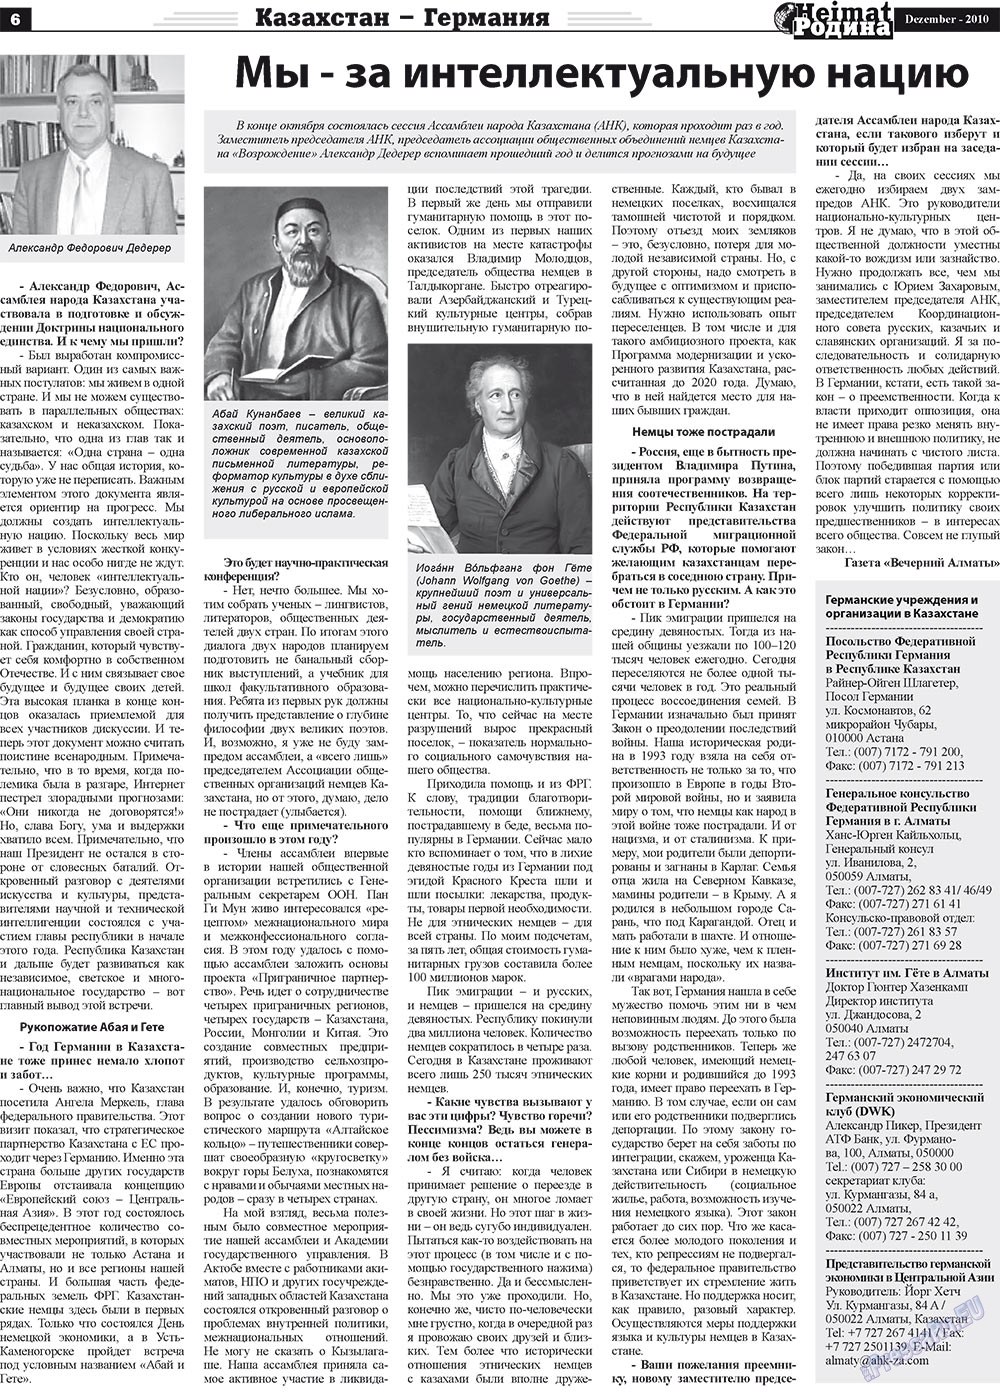 Heimat-Родина (газета). 2010 год, номер 12, стр. 6